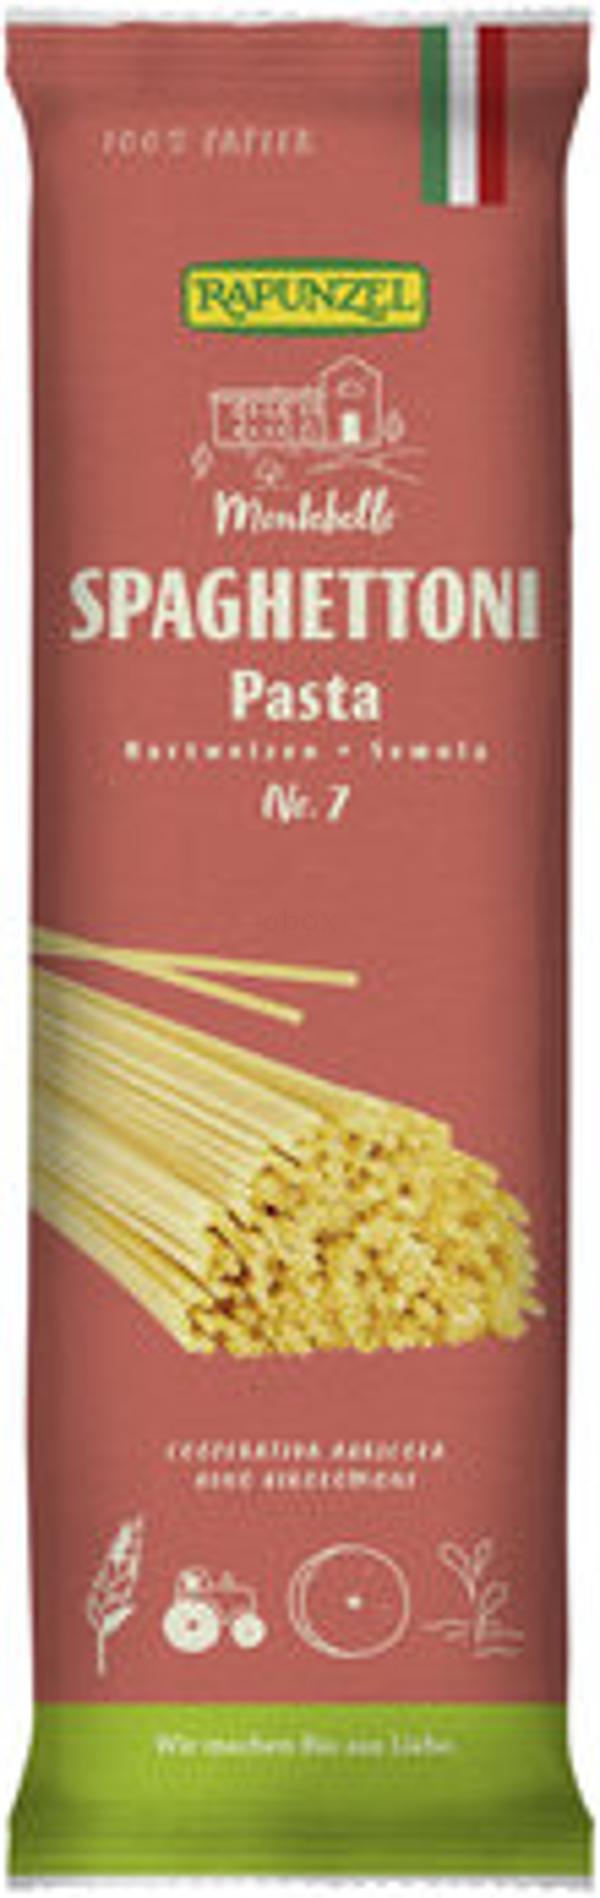 Produktfoto zu Spaghetti Semola no. 7